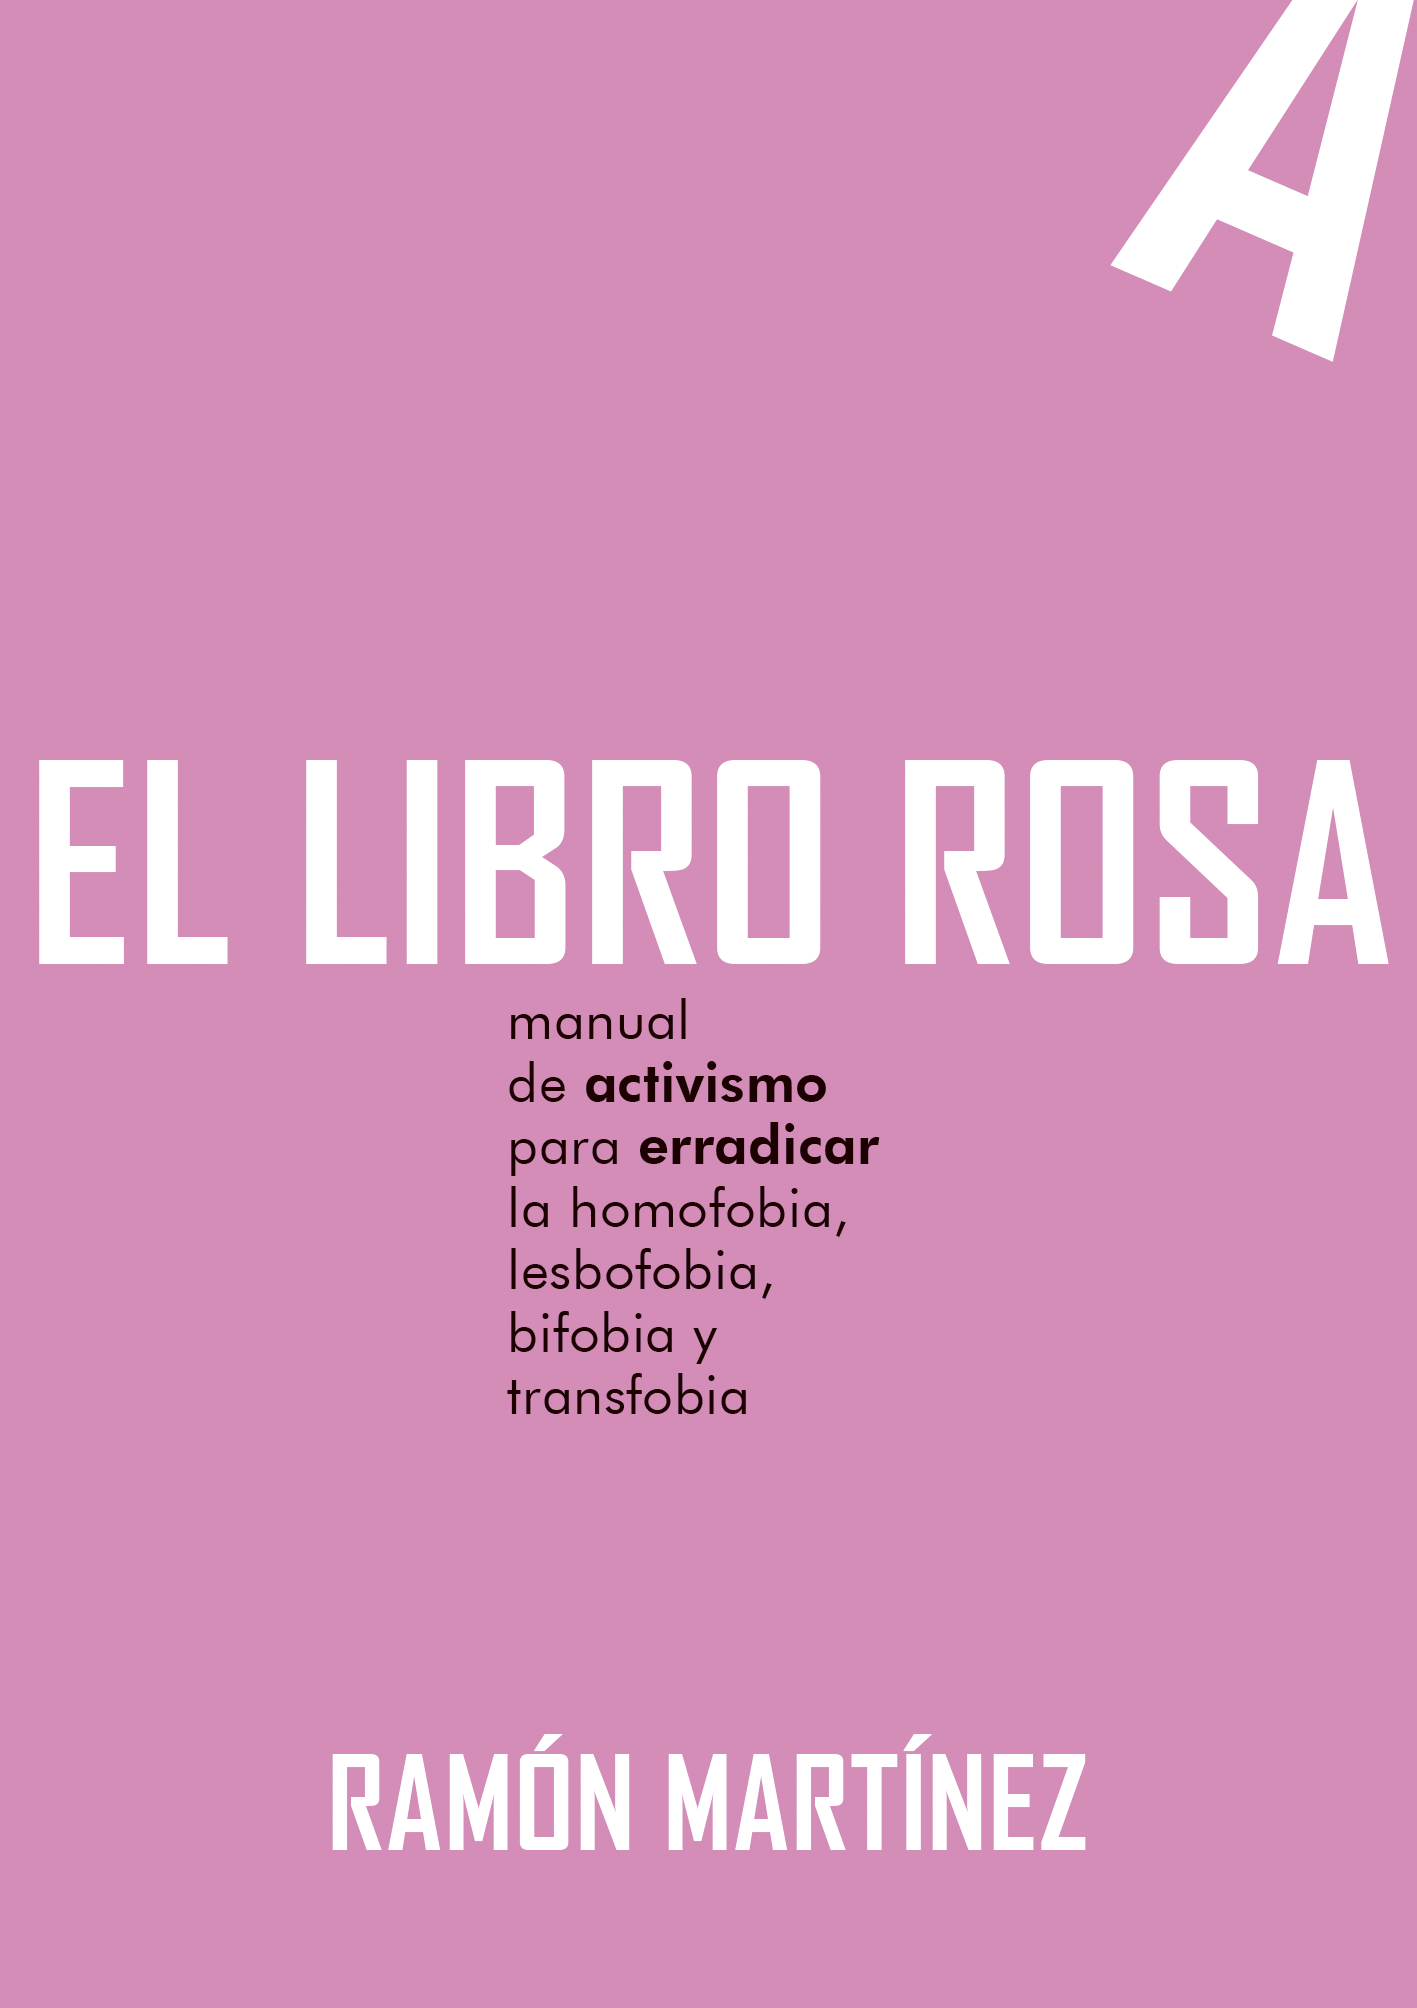 EL LIBRO ROSA - Ramon Martínez